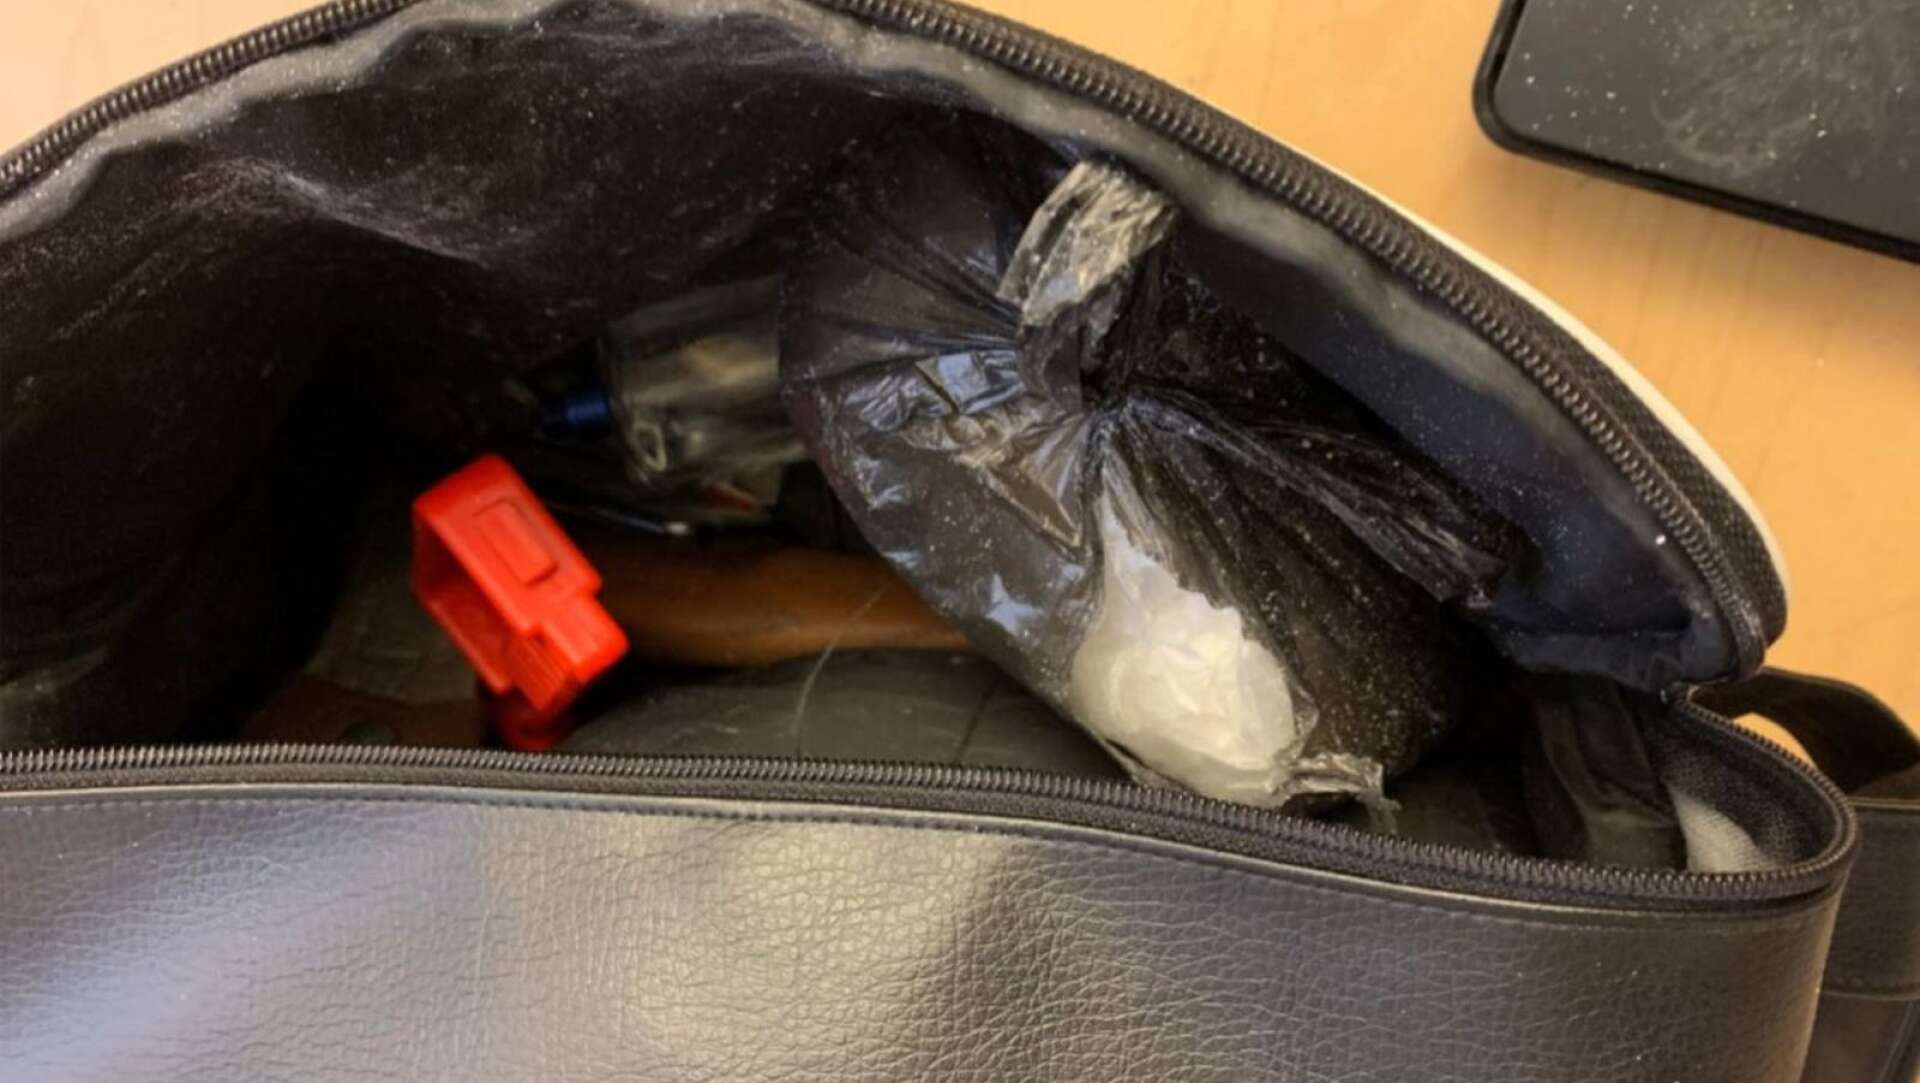 I väskan hittades polisen bland annat en yxa, en glashammare och ett kilo amfetamin.